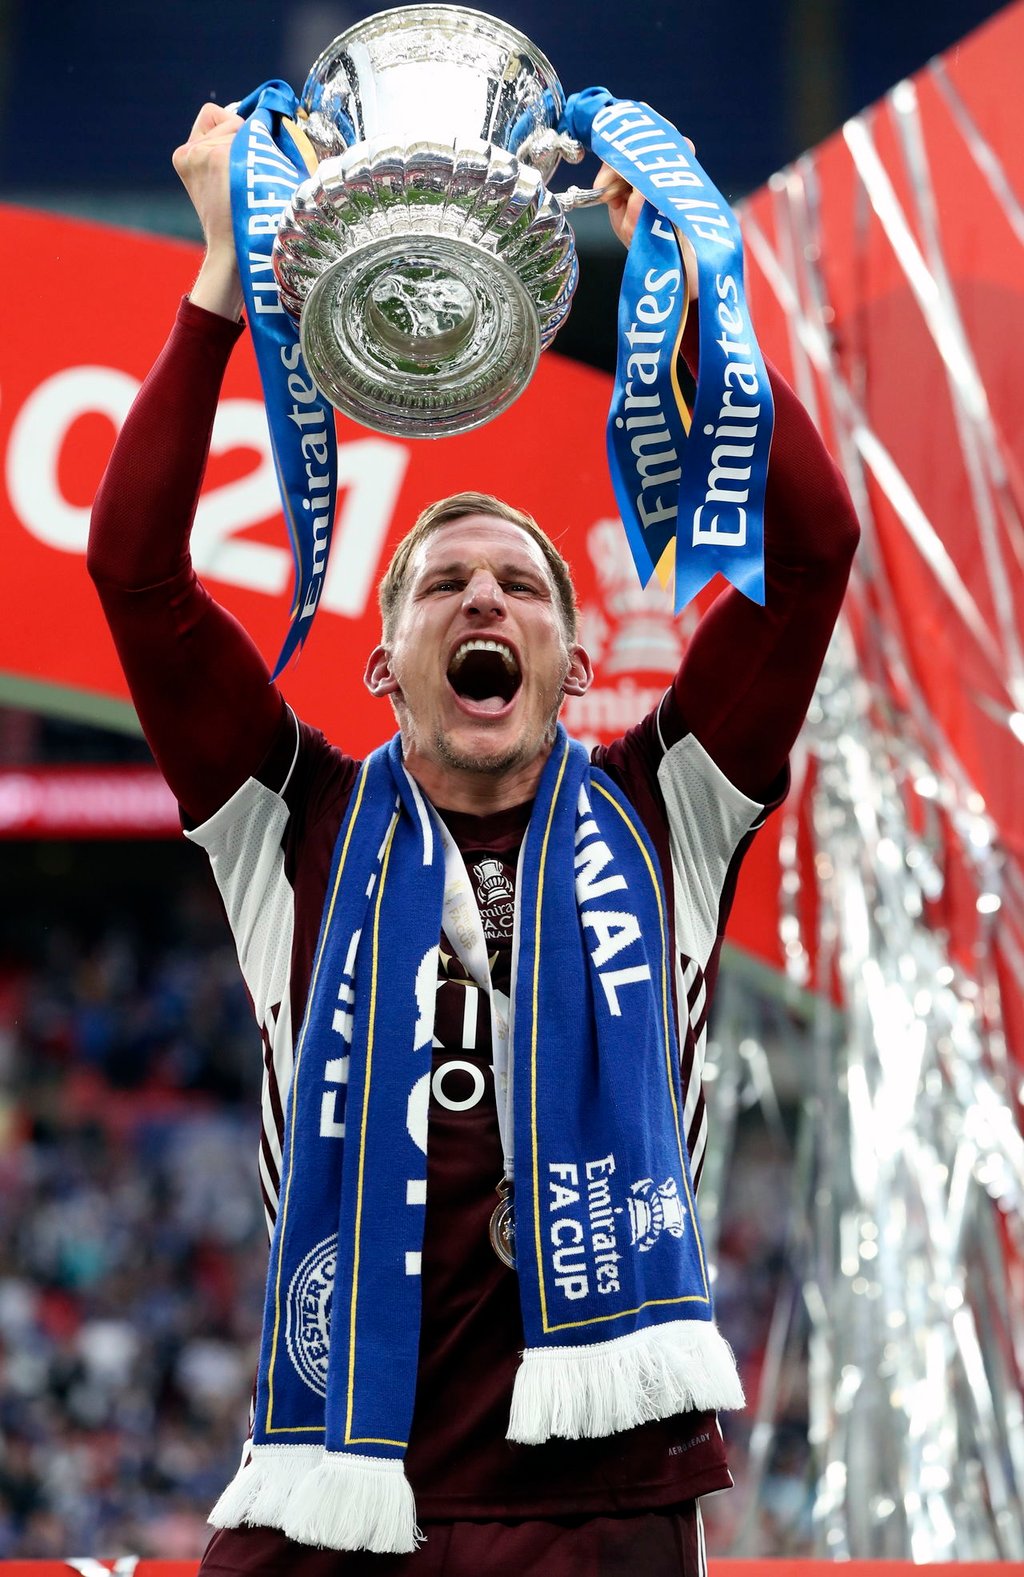 Leicester, campeón de Copa